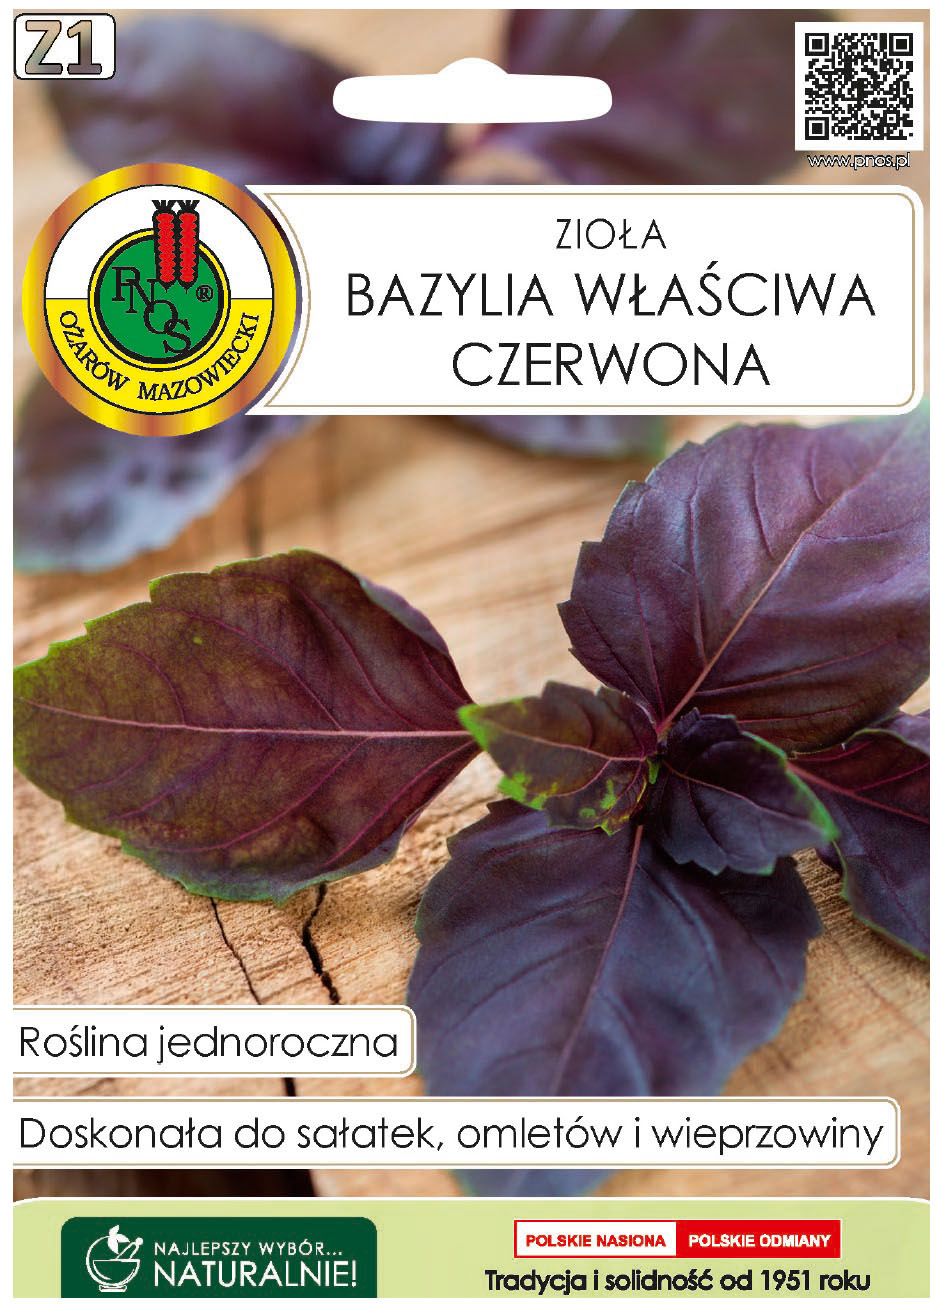 Bazylia właściwa czerwona to roślina jednoroczna, uprawiana z rozsady lub z siewu wprost do gruntu nawet na domowym parapecie.